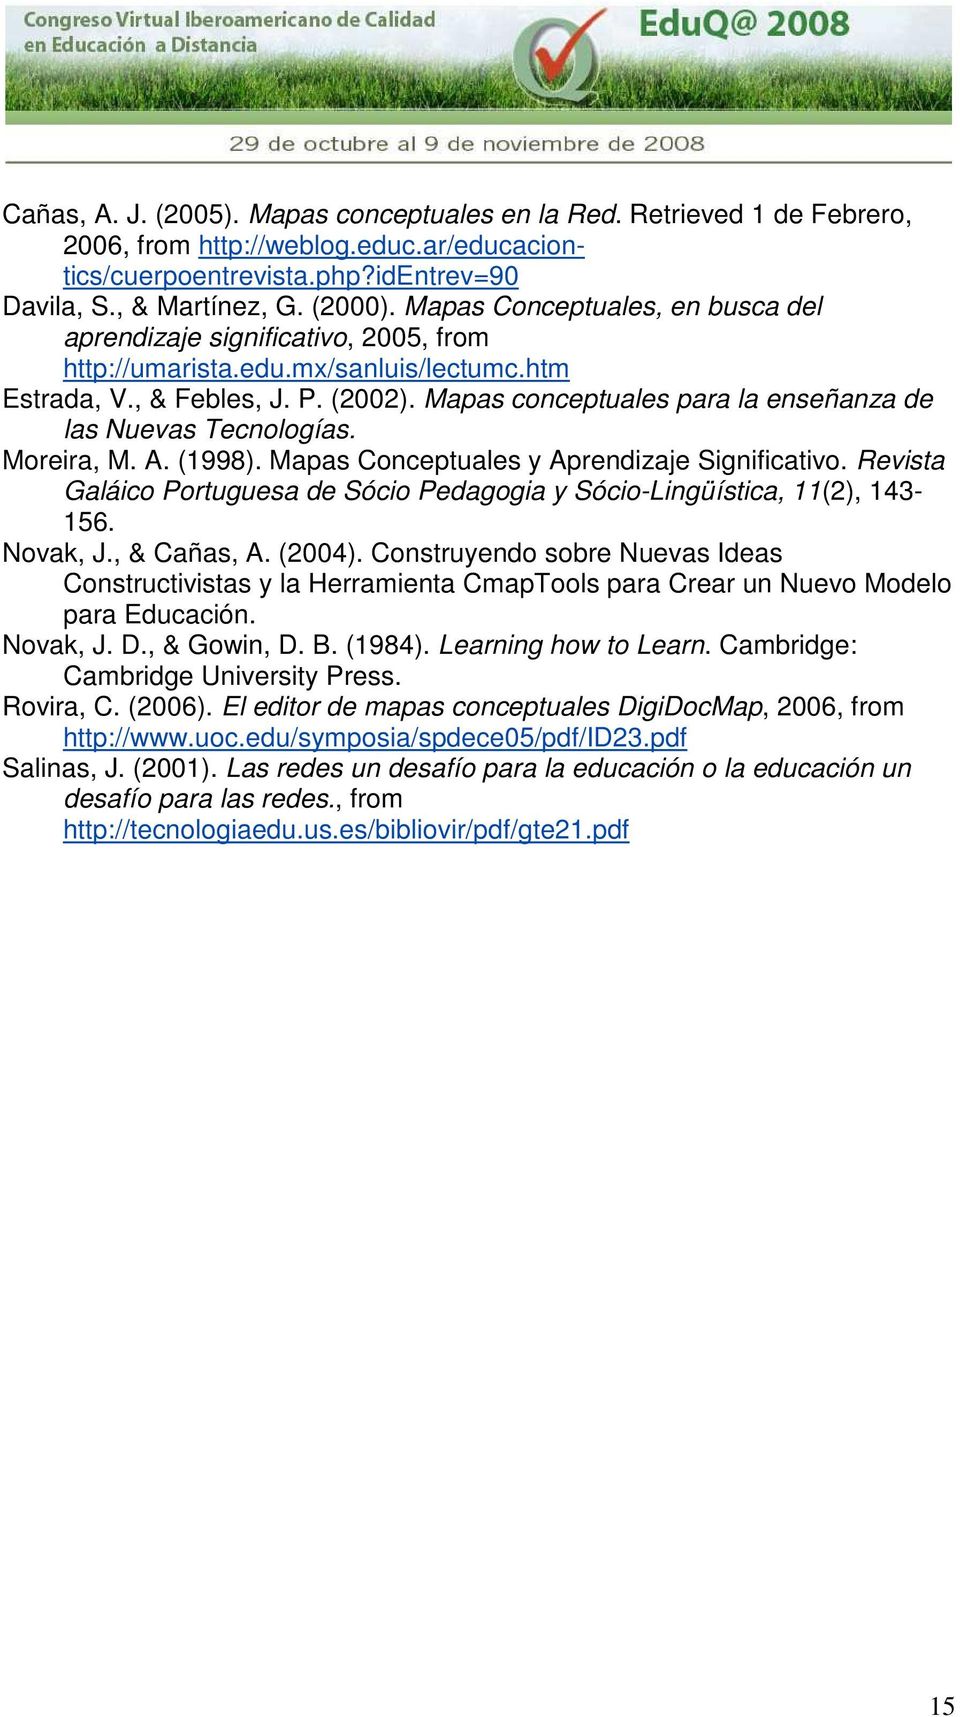 Mapas conceptuales para la enseñanza de las Nuevas Tecnologías. Moreira, M. A. (1998). Mapas Conceptuales y Aprendizaje Significativo.